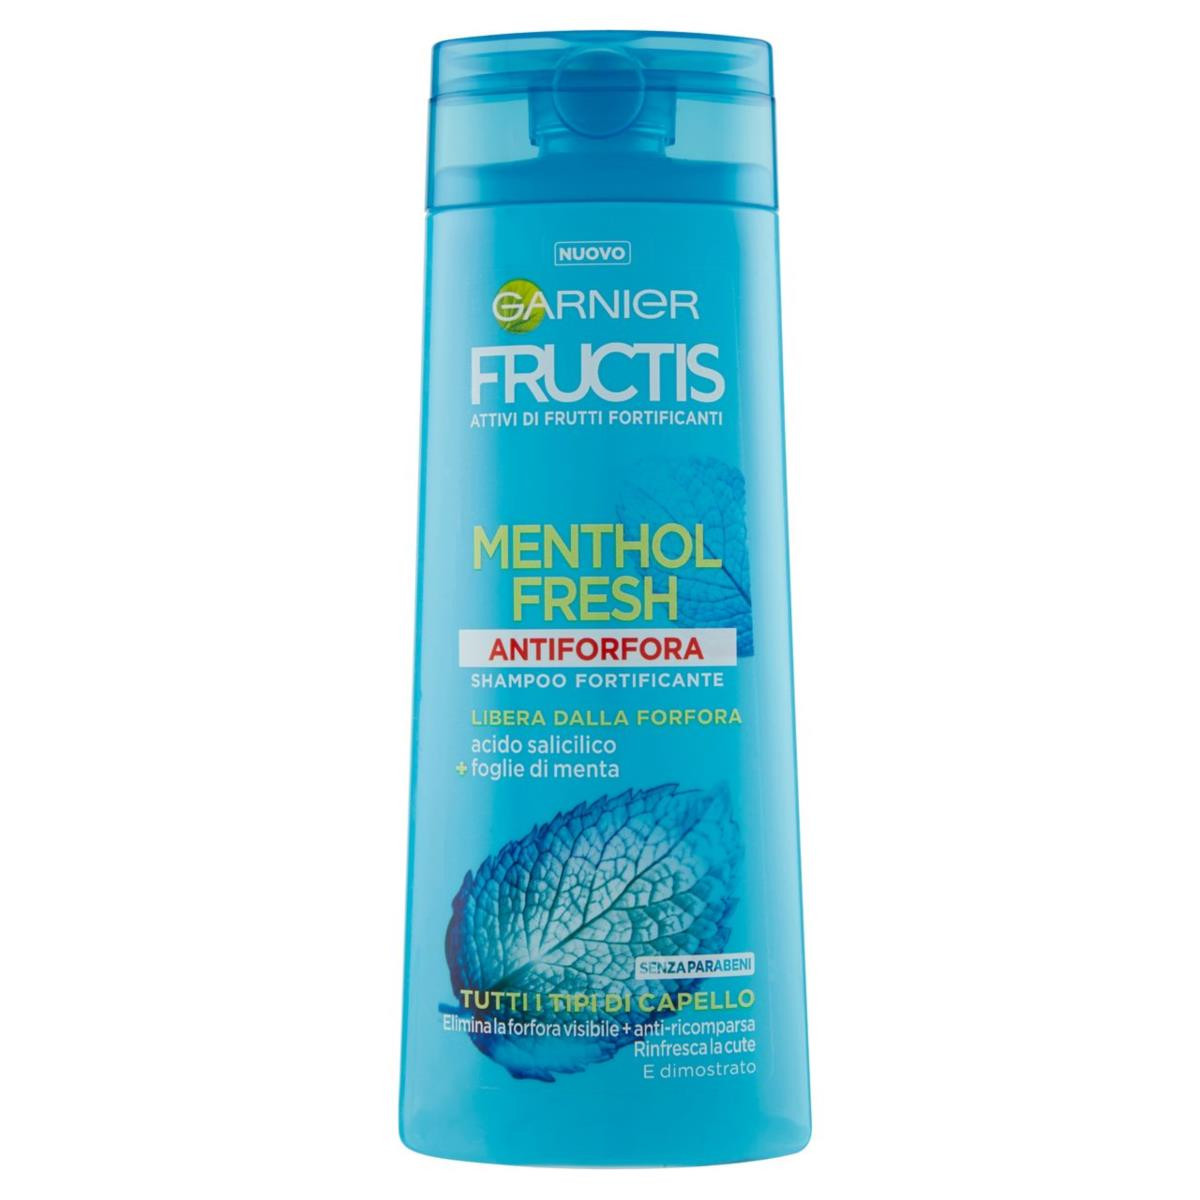 GARNIER Fructis Menthol Fresh - Shampoo antiforfora per tutti i tipi di capello - 250 ml